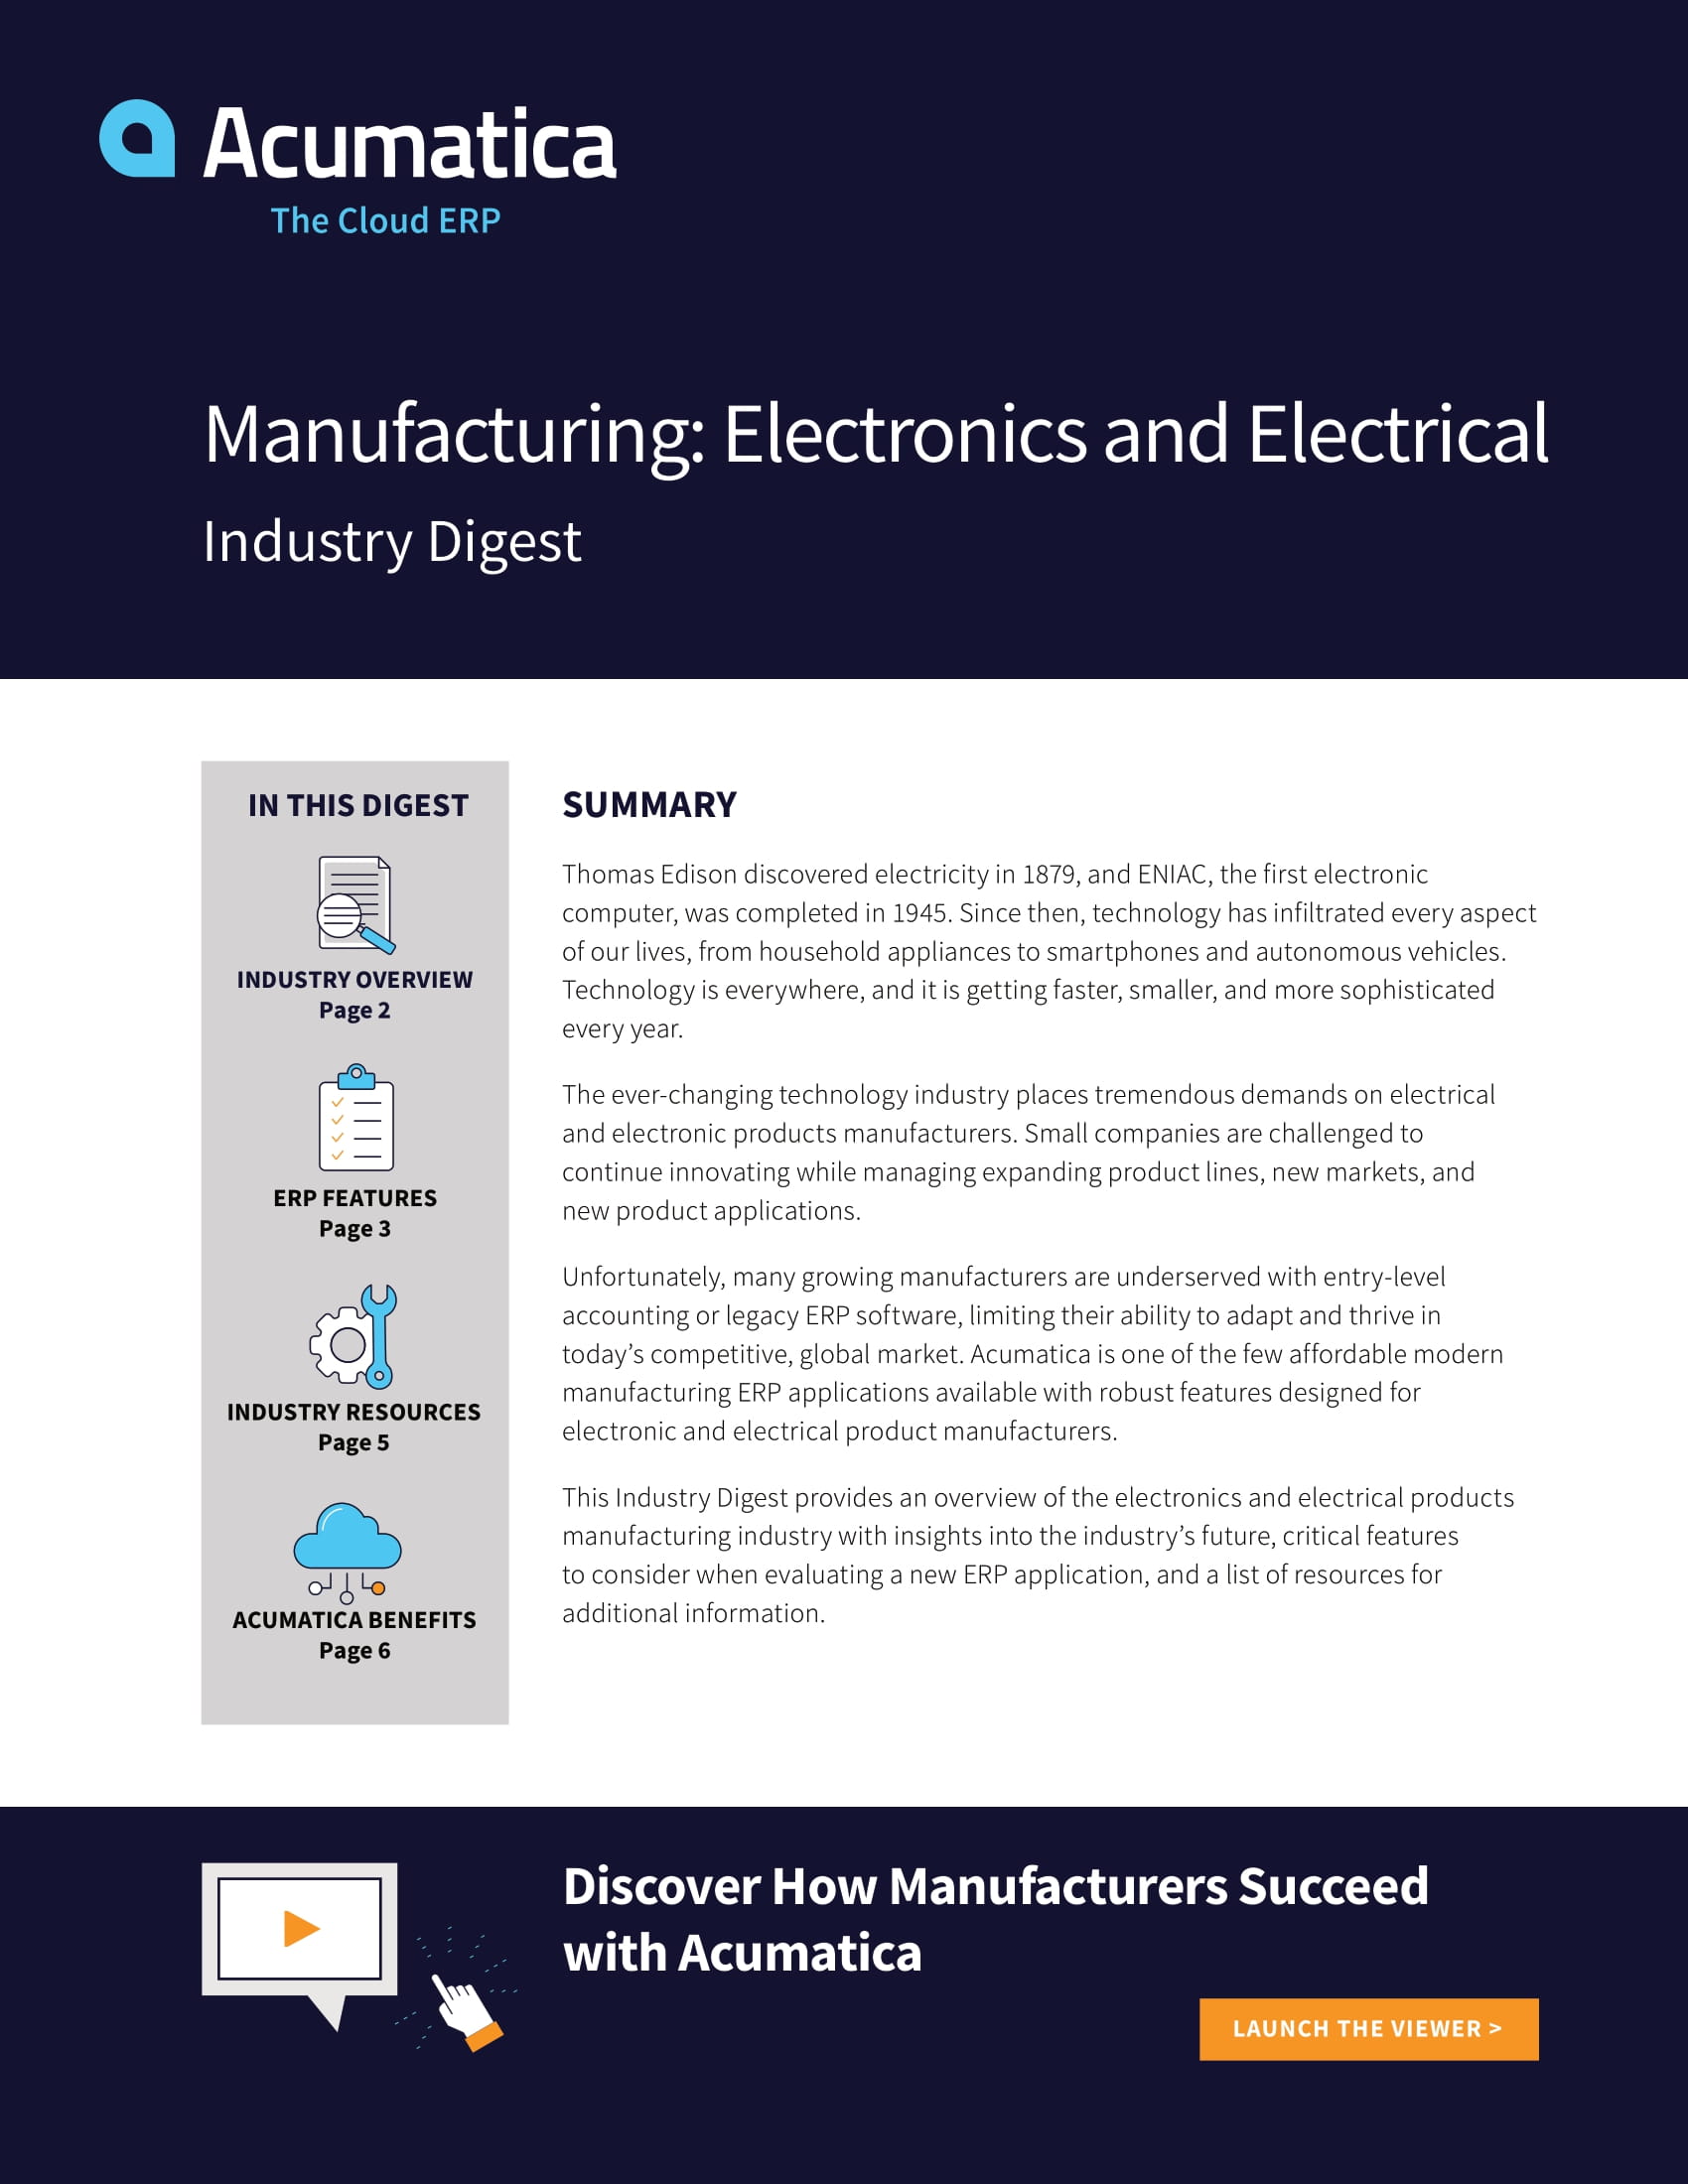 Acumatica Cloud ERP impulsa el éxito de los fabricantes de electrónica y productos eléctricos 